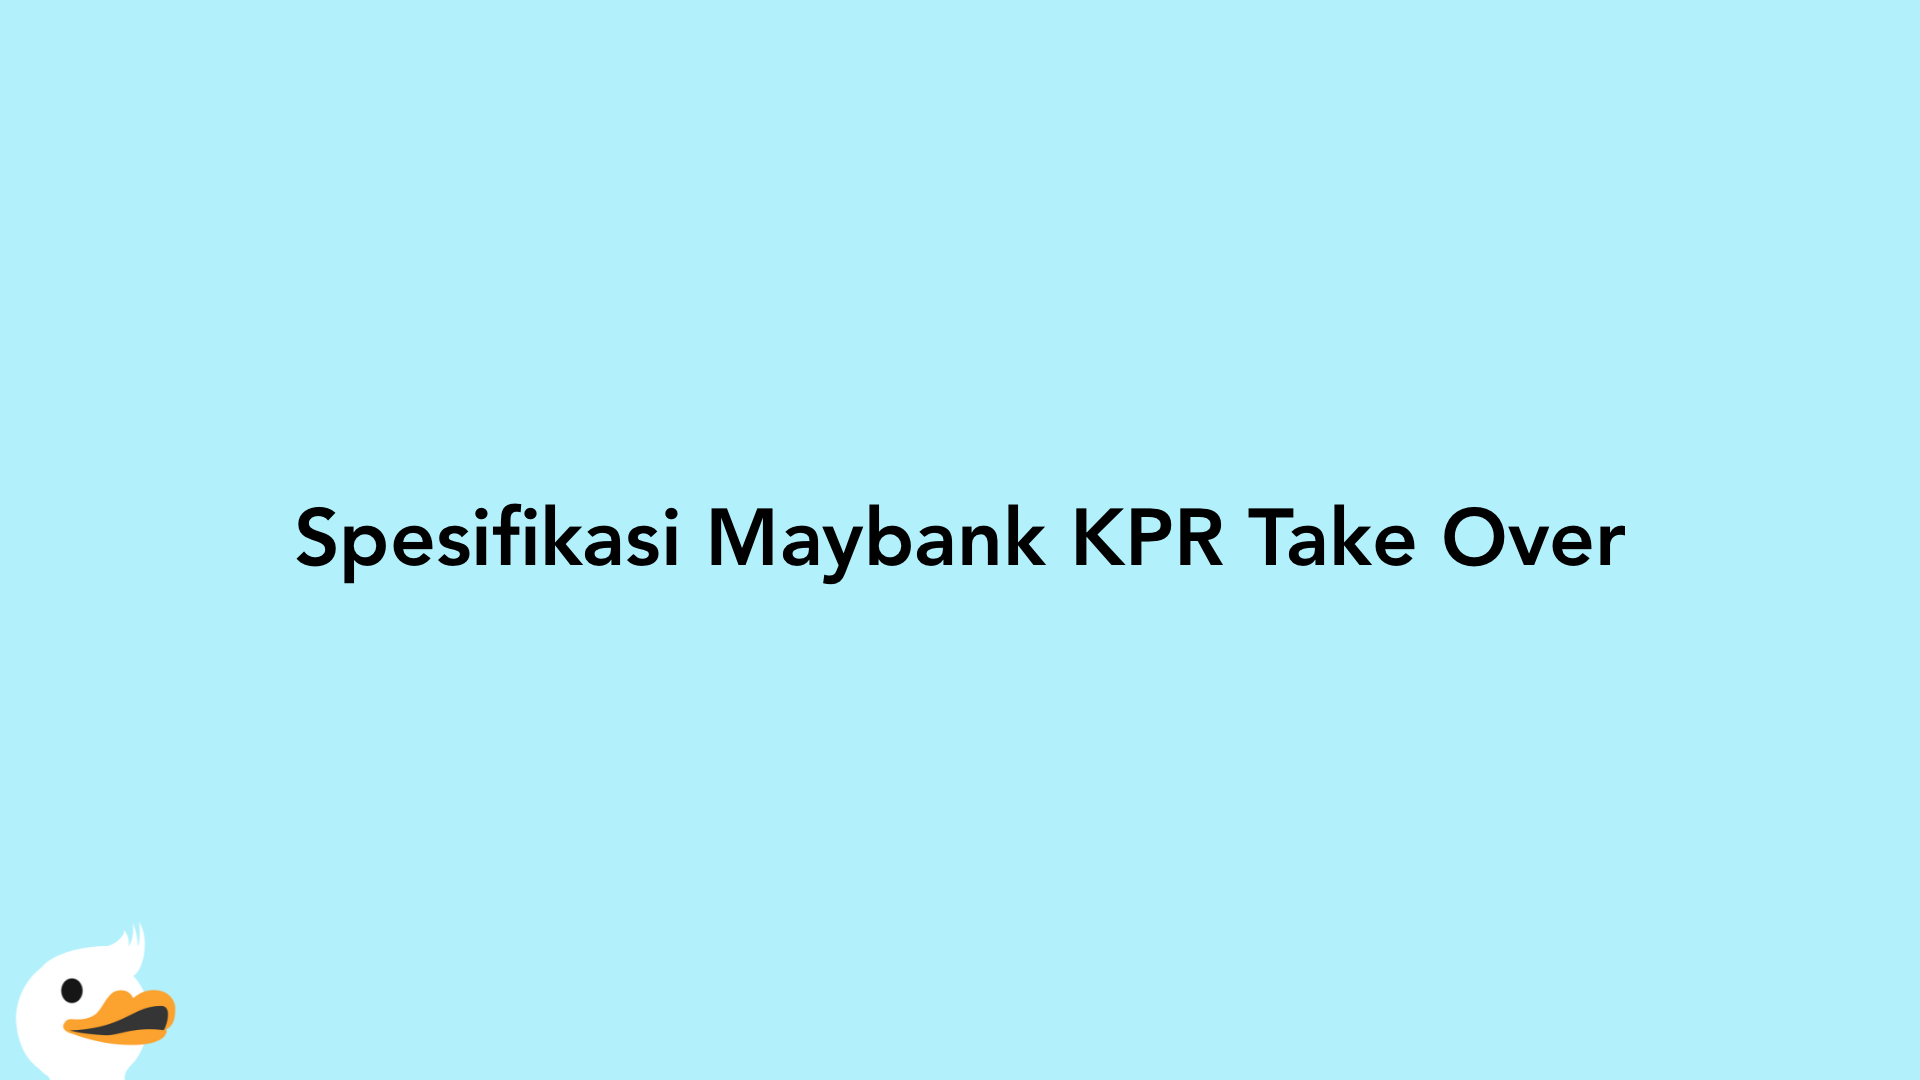 Spesifikasi Maybank KPR Take Over